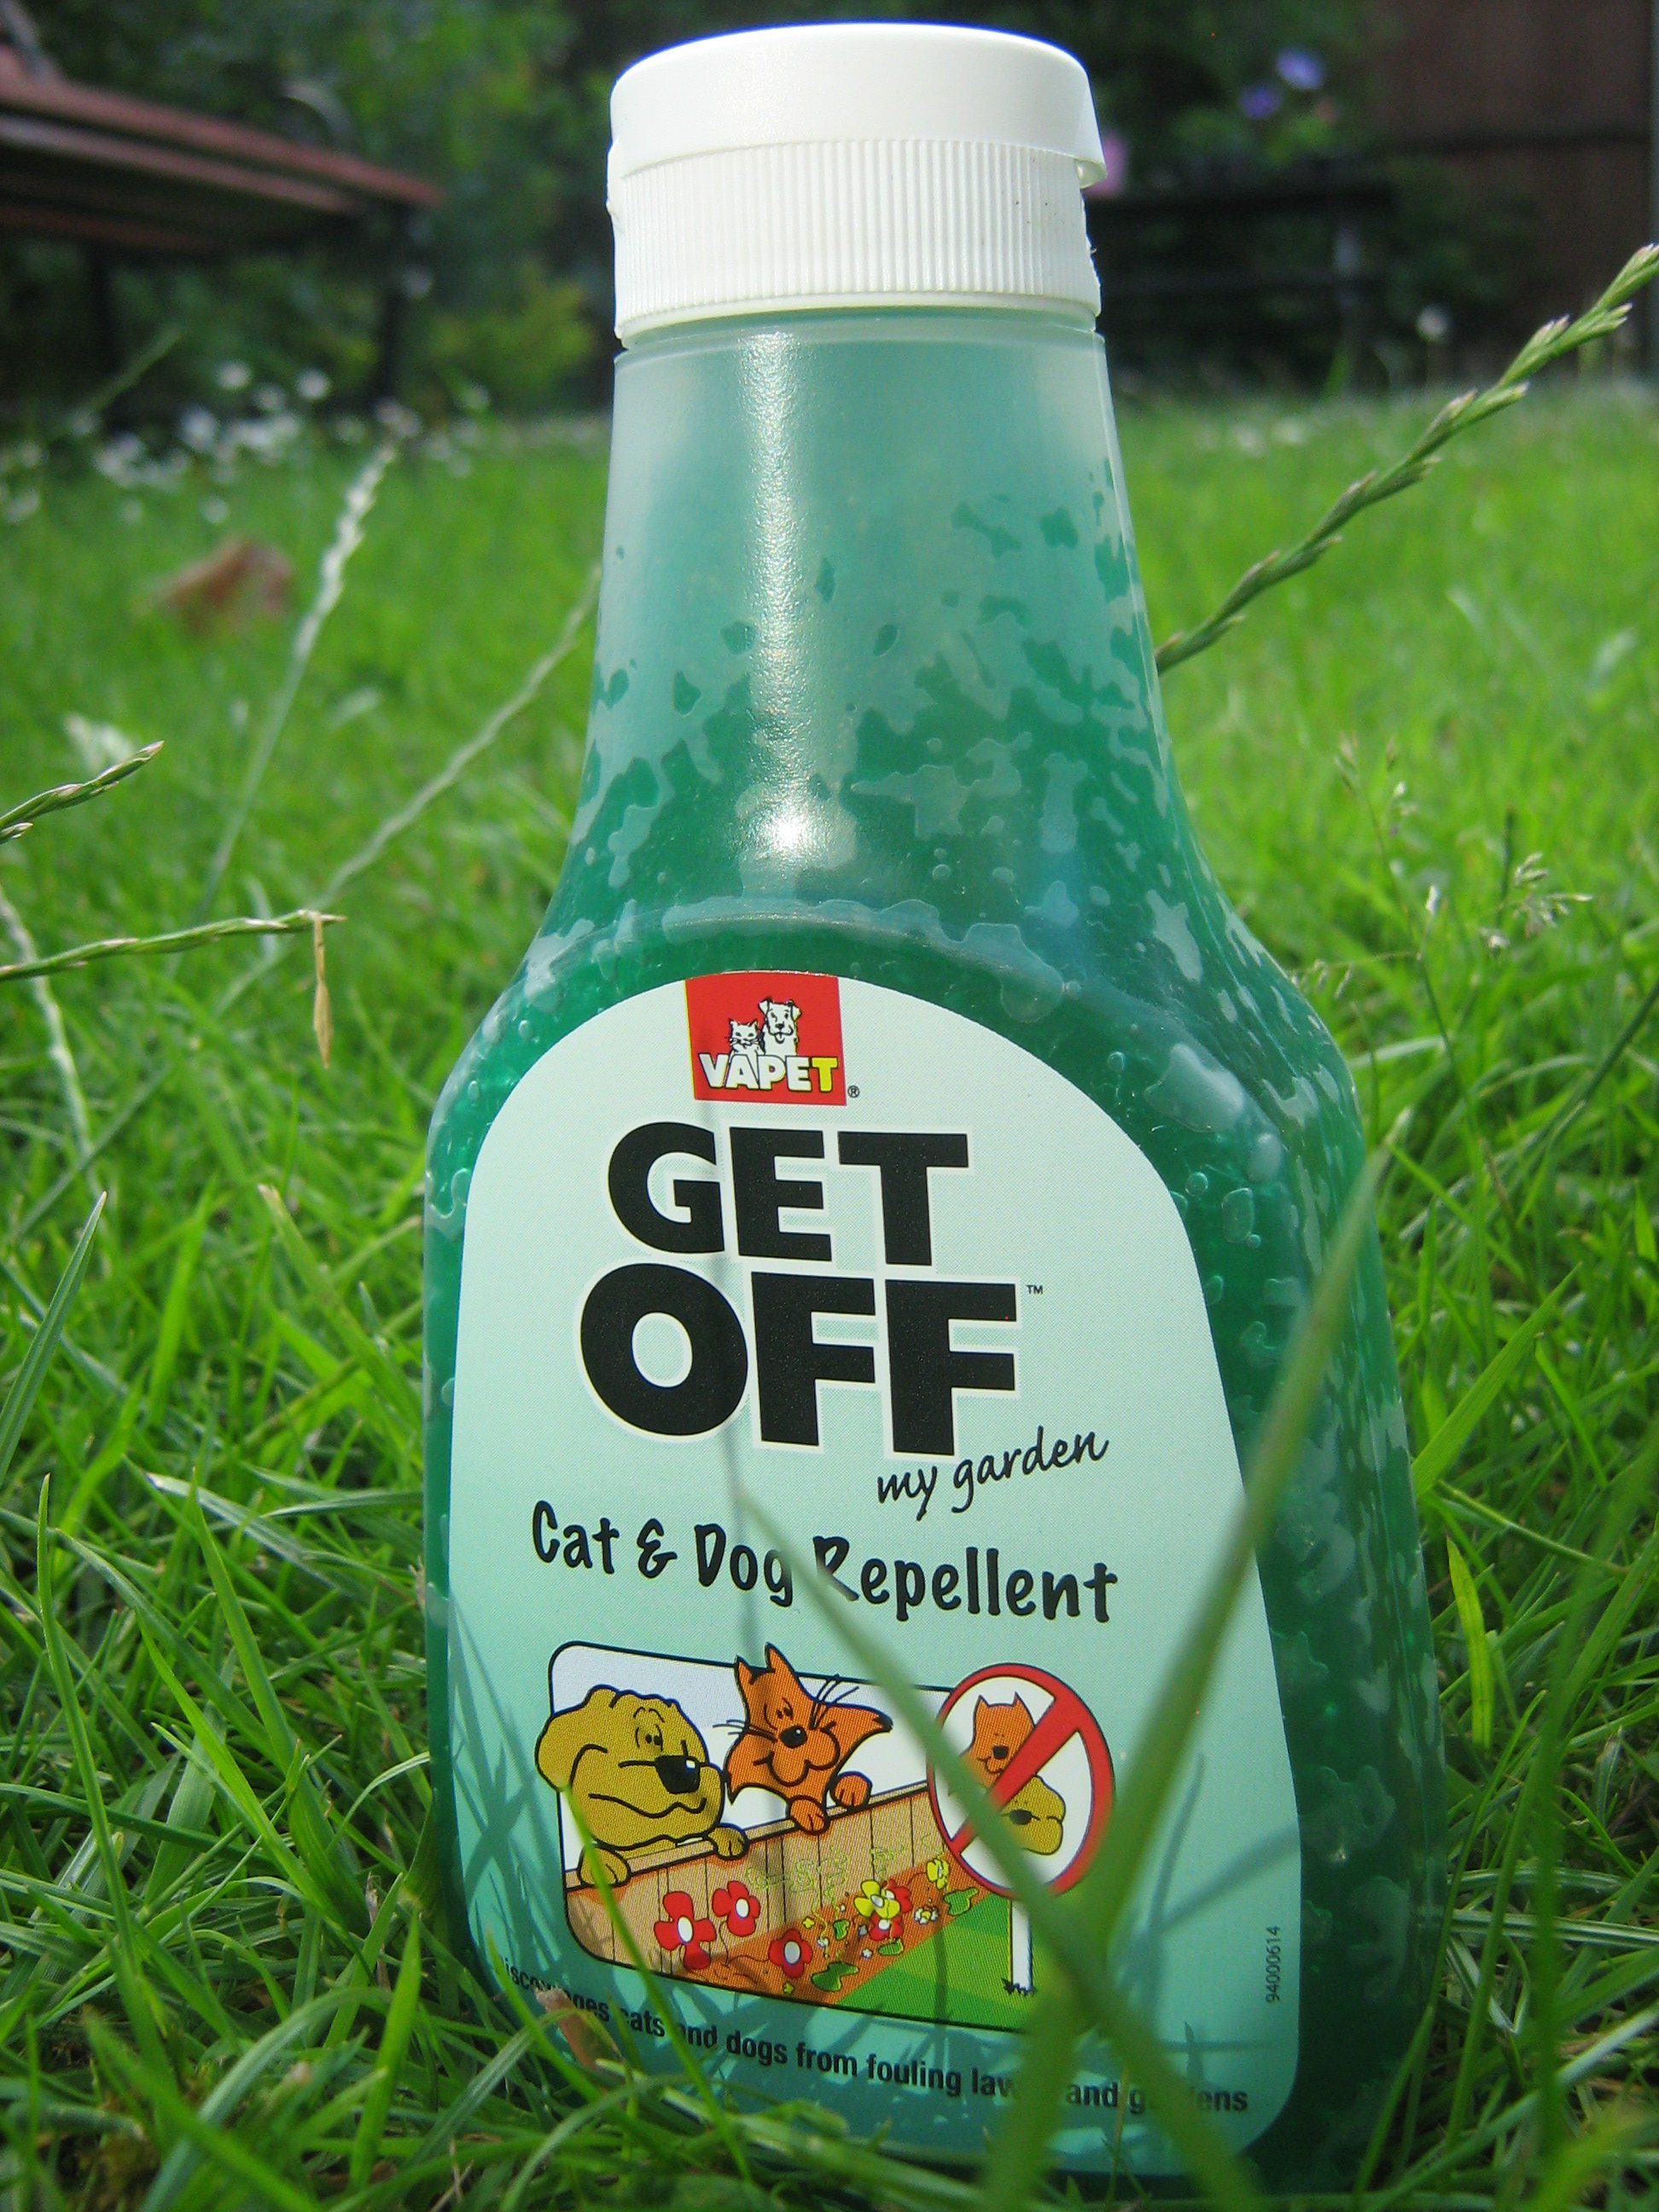 Get Off My Garden Fox Repellent Review | Get Off Fox ...